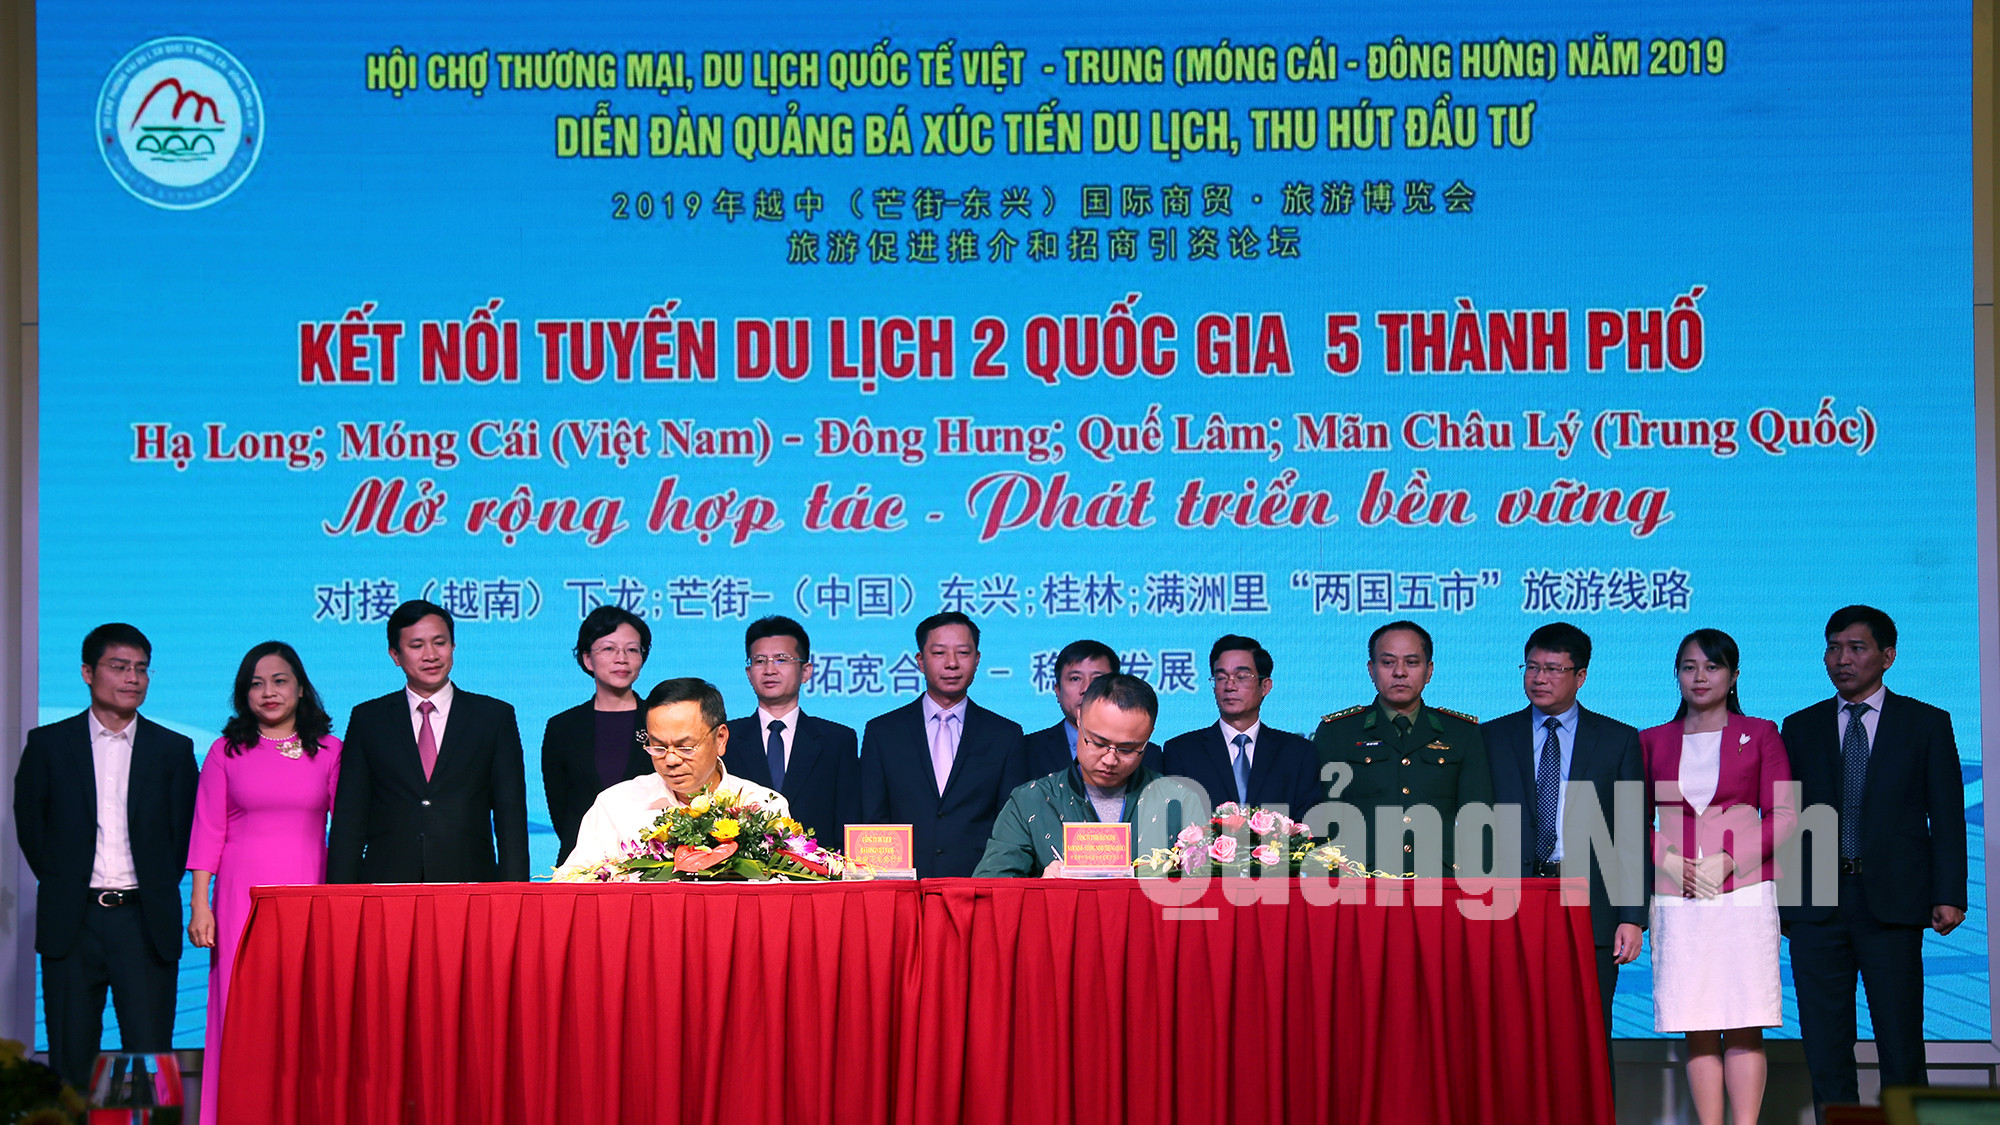 Các doanh nghiệp du lịch 2 địa phương Quảng Ninh (Việt Nam) và Quảng Tây (Trung Quốc) ký kết các hợp đồng trao đổi khách (12-2019). Ảnh: Hữu Việt.